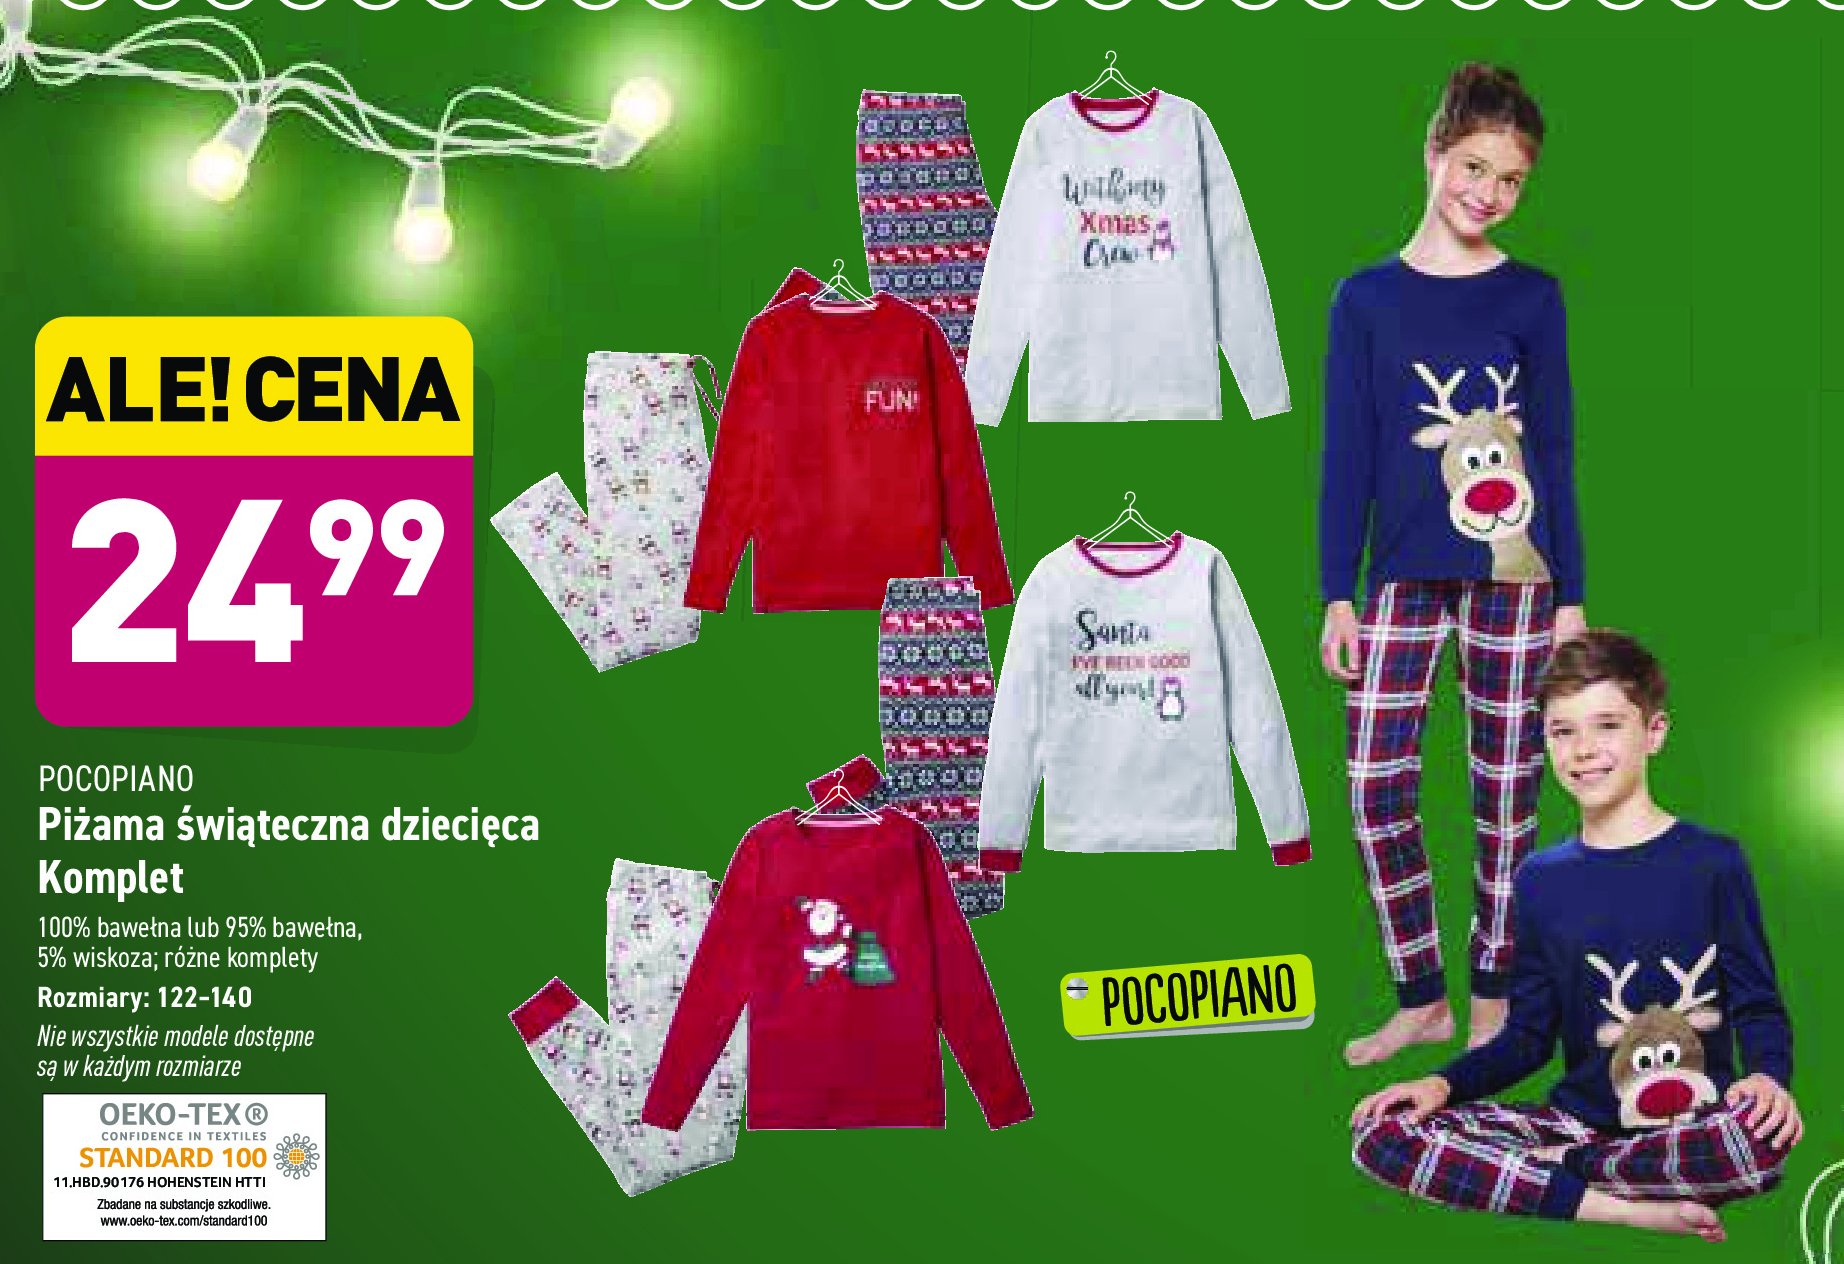 Piżama świąteczna 122-140 Pocopiano promocja